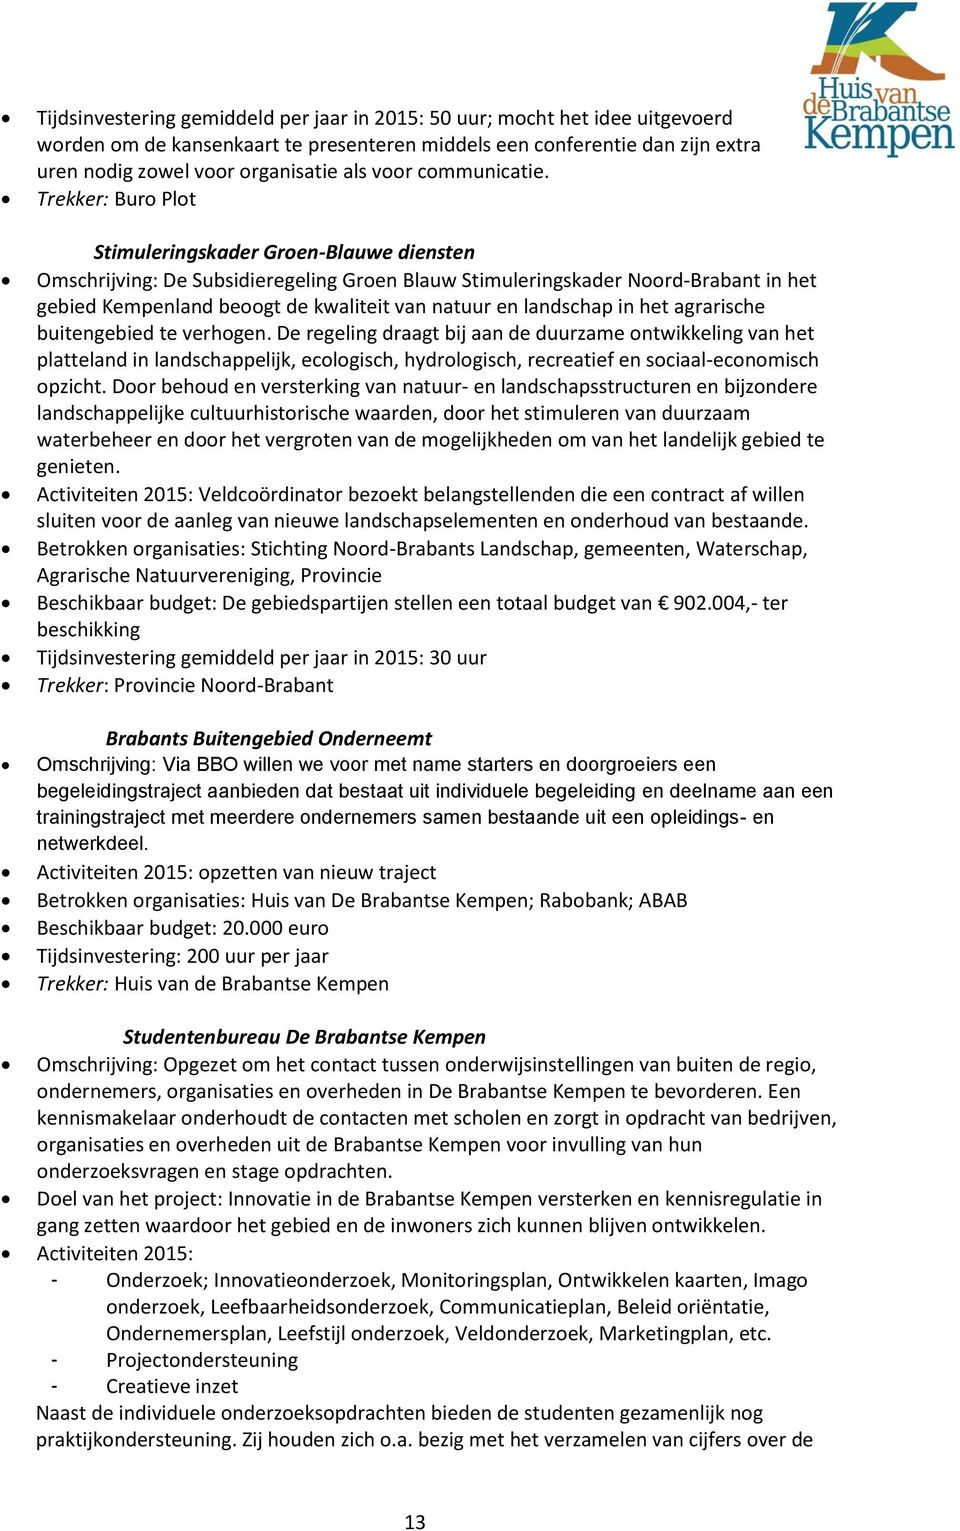 Trekker: Buro Plot Stimuleringskader Groen-Blauwe diensten Omschrijving: De Subsidieregeling Groen Blauw Stimuleringskader Noord-Brabant in het gebied Kempenland beoogt de kwaliteit van natuur en